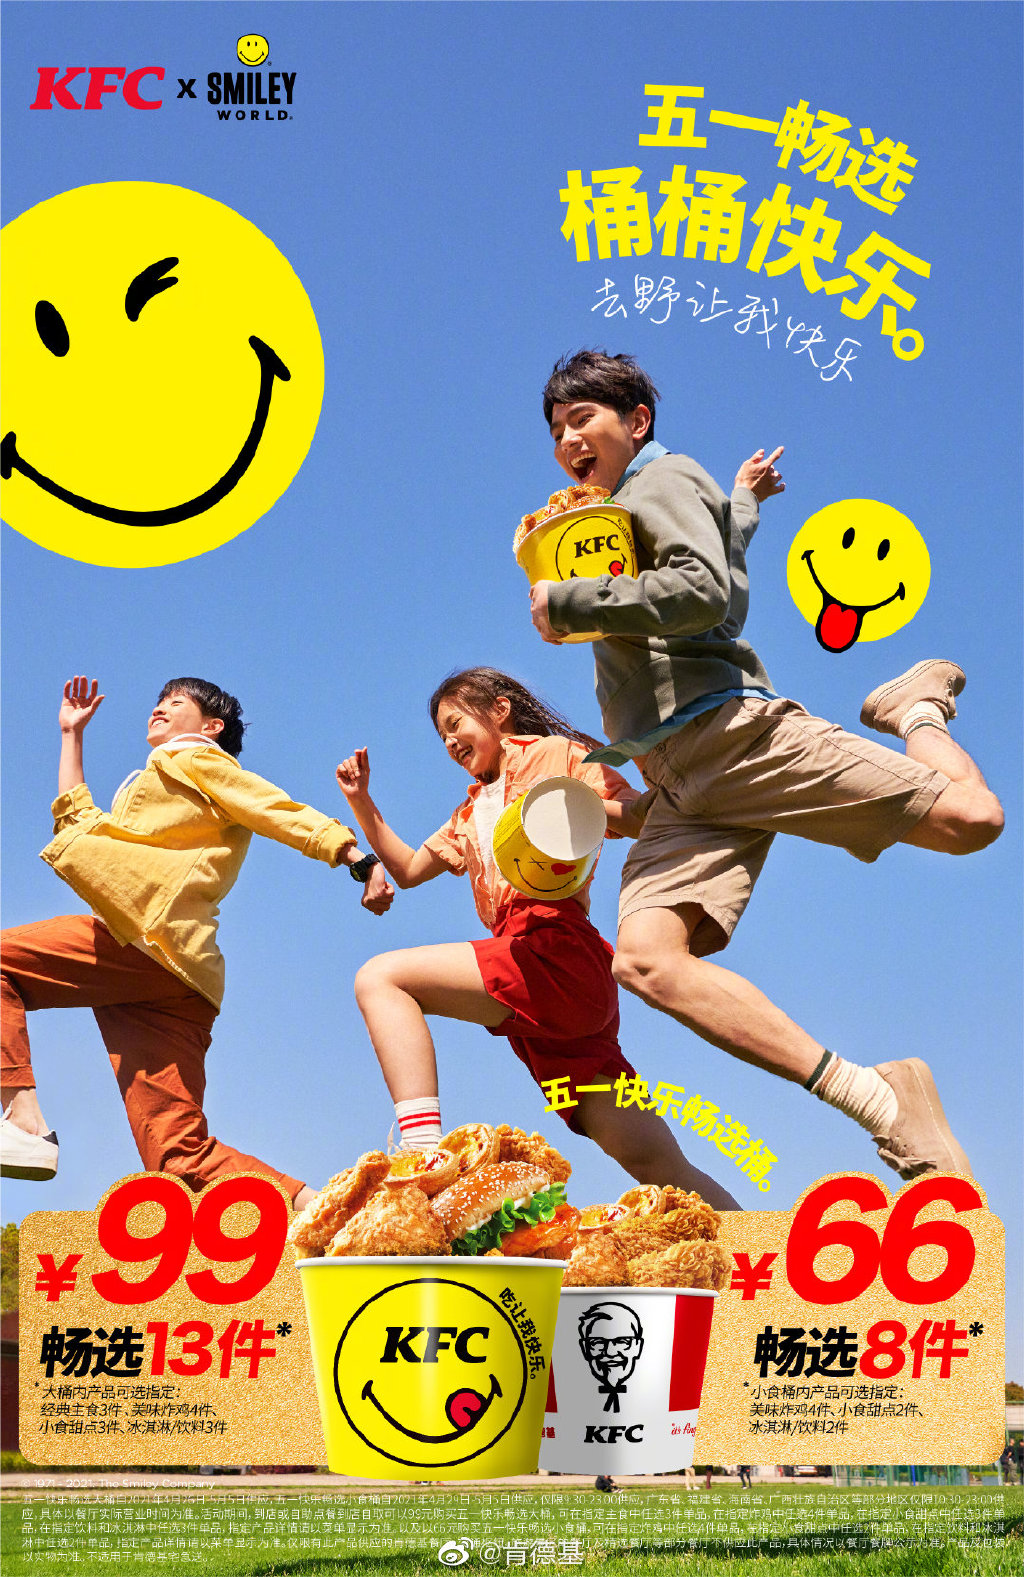 肯德基 × Smiley 推出快乐畅选桶